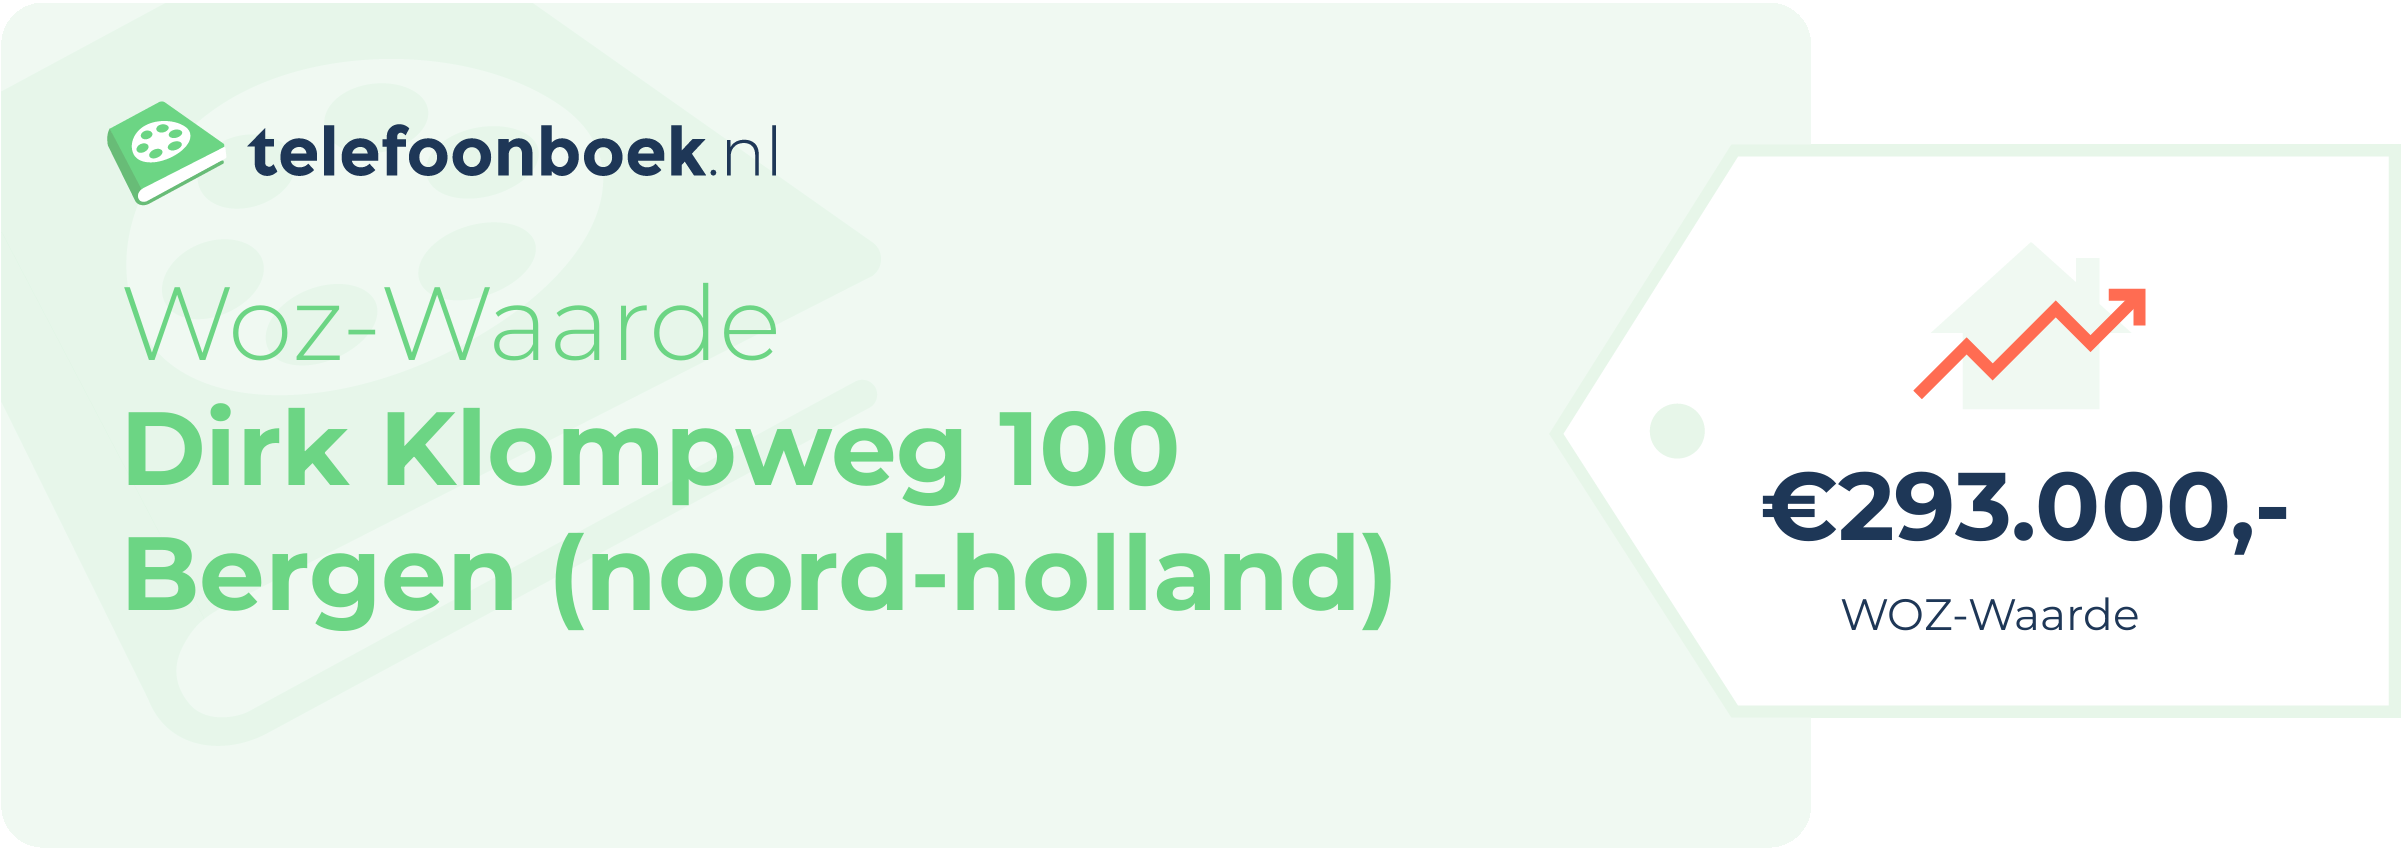 WOZ-waarde Dirk Klompweg 100 Bergen (Noord-Holland)